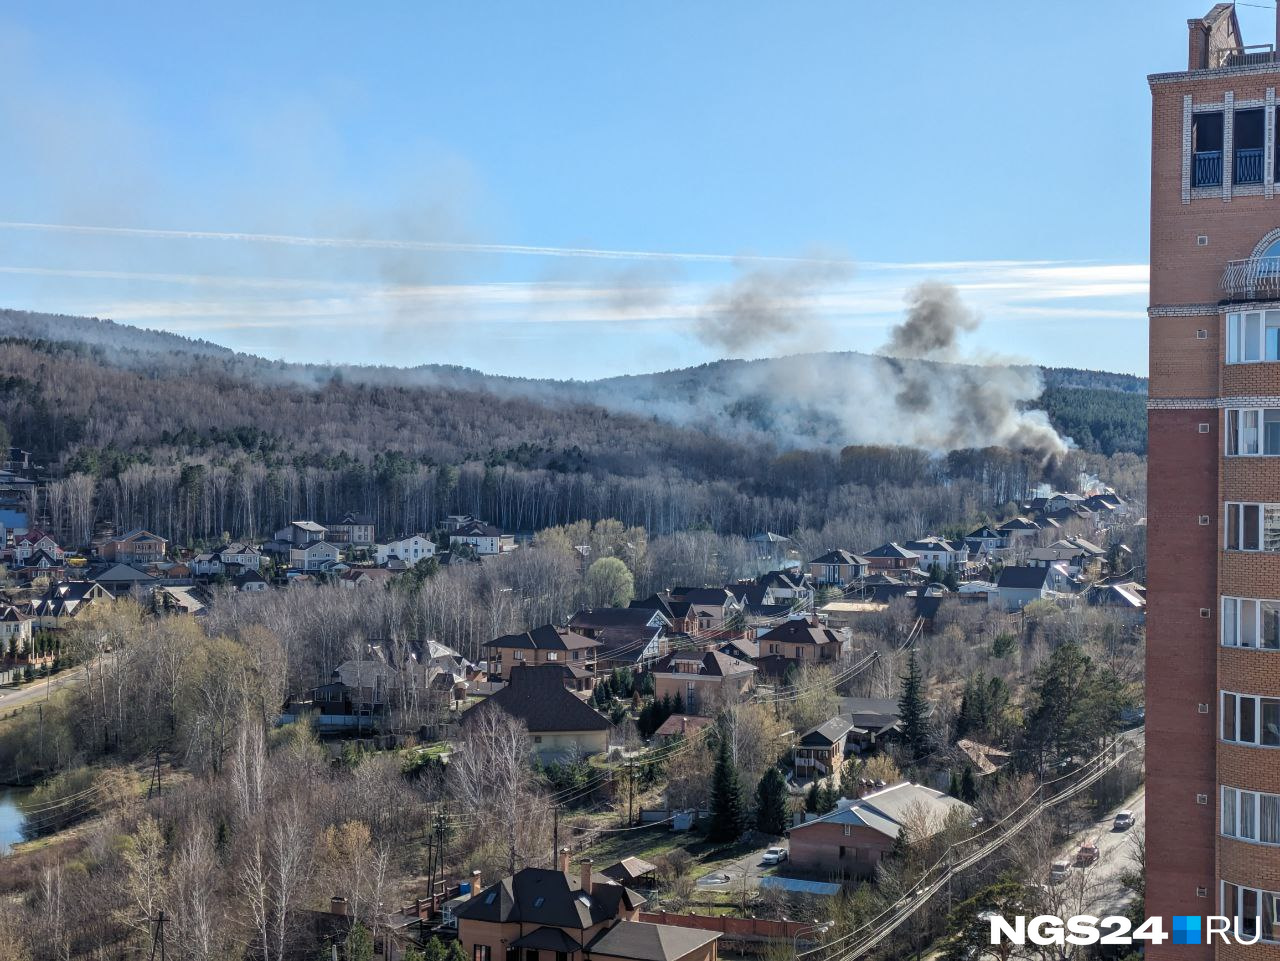 Красноярцы рассказывают о сильных пожарах в Ветлужанке и на Никитина: что там загорелось